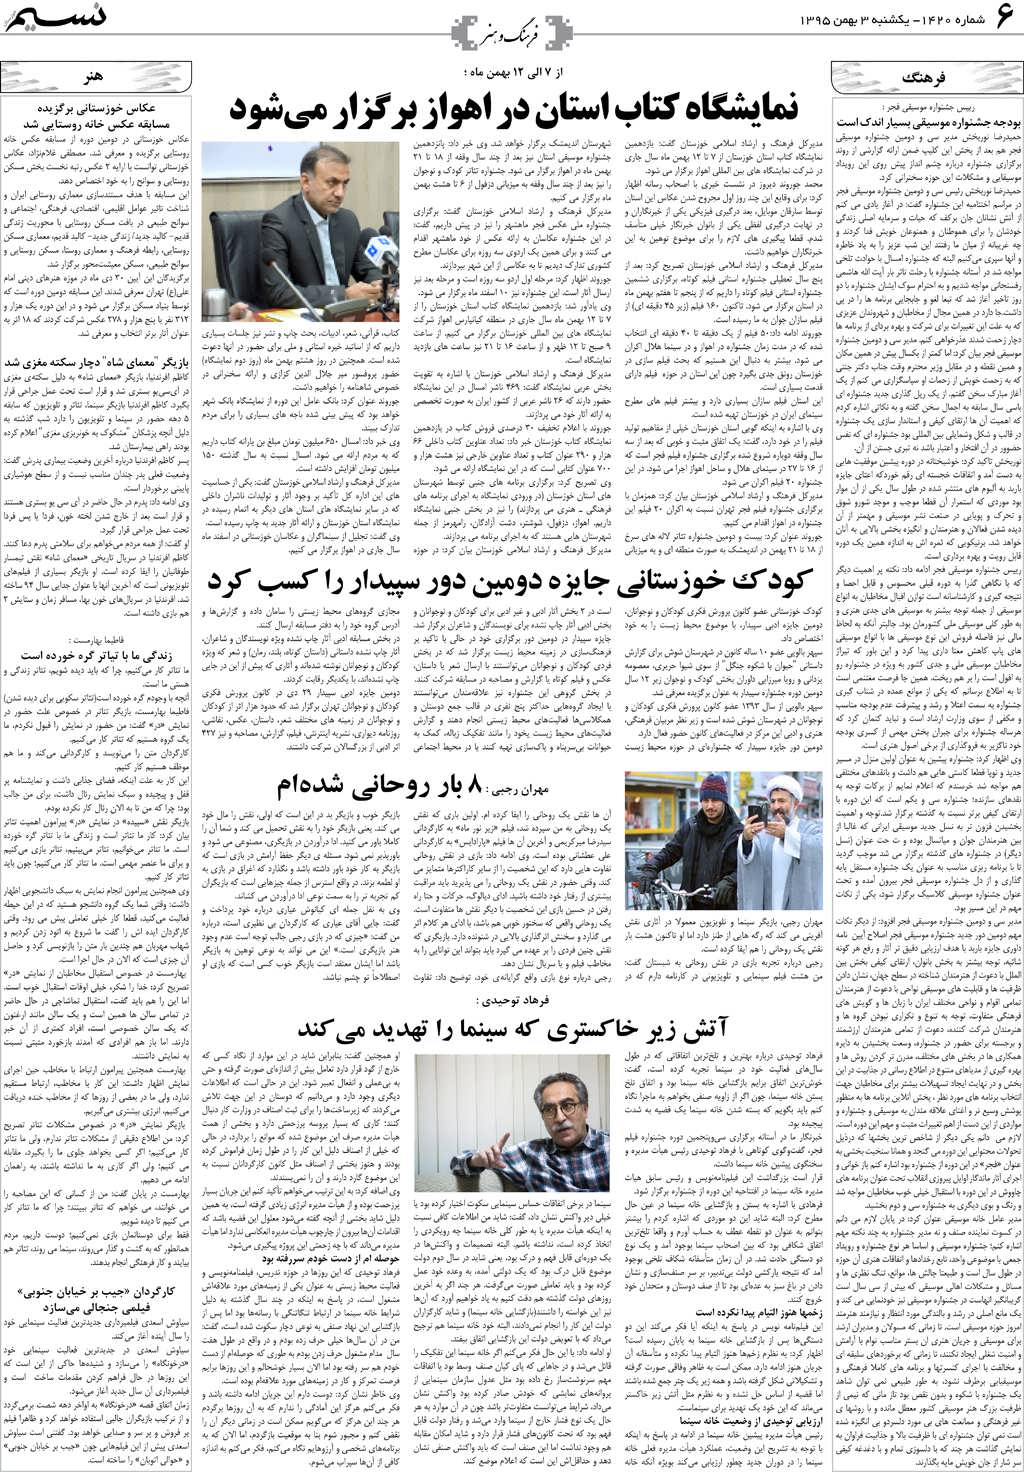 صفحه فرهنگ و هنر روزنامه نسیم شماره 1420